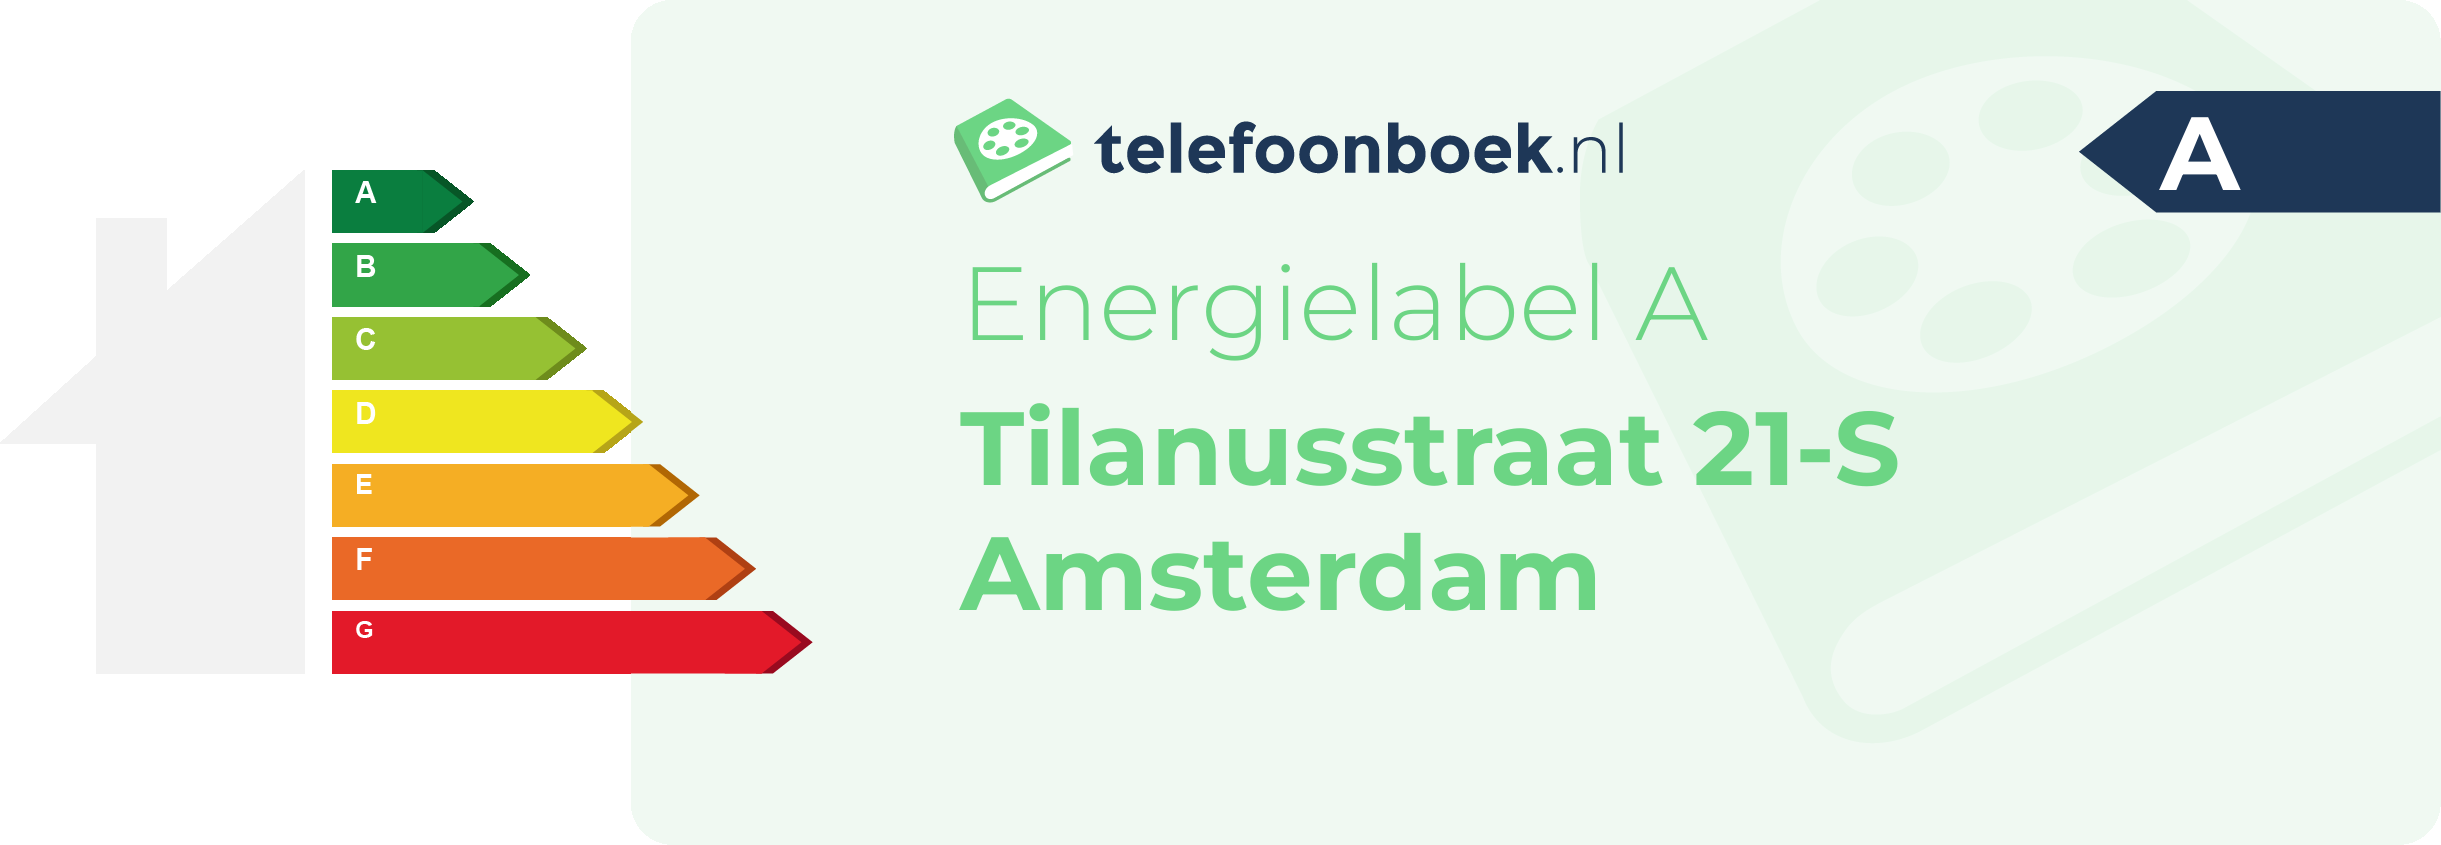 Energielabel Tilanusstraat 21-S Amsterdam